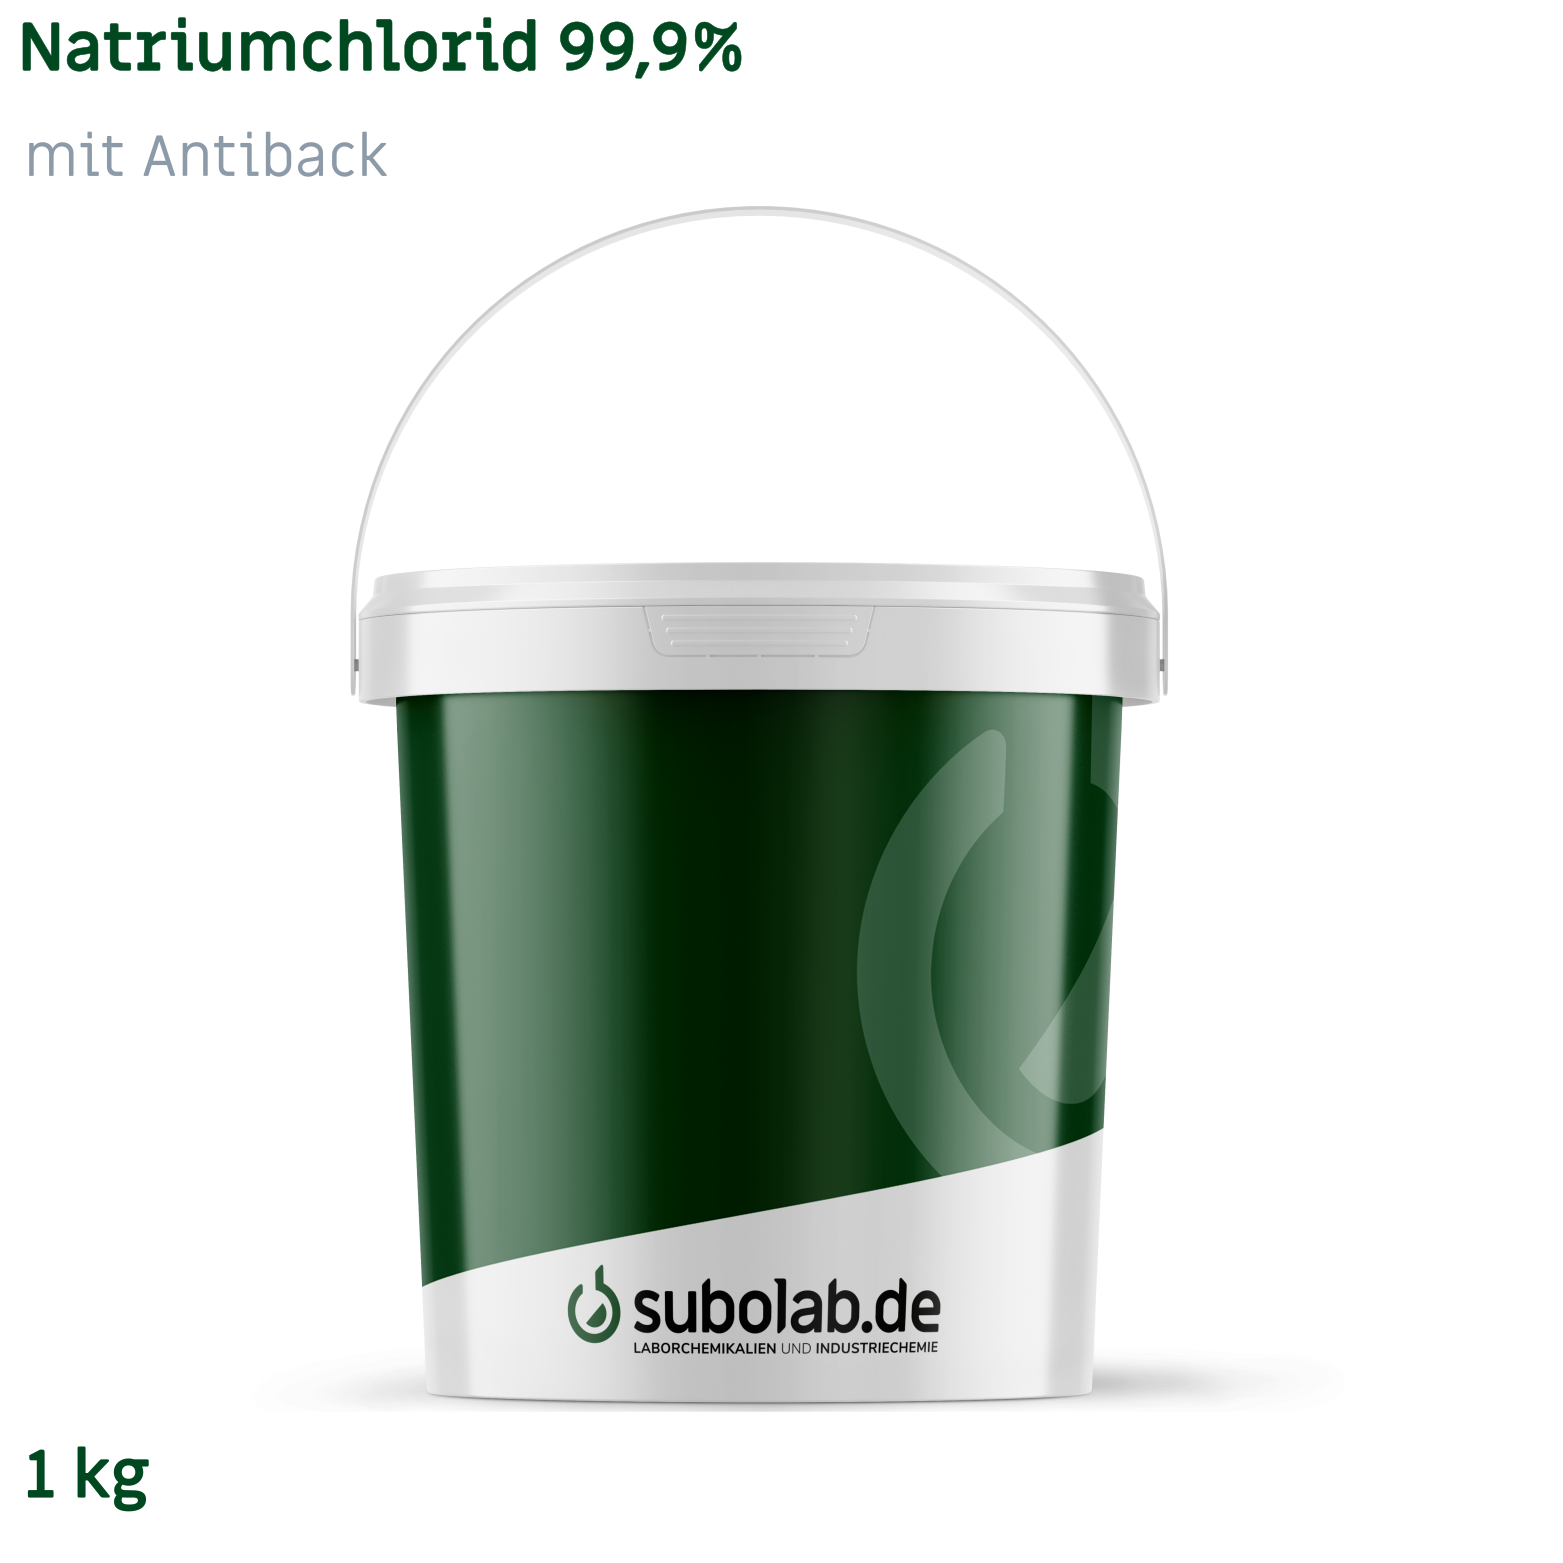 Bild von Natriumchlorid 99,9% mit Antiback (1 kg)